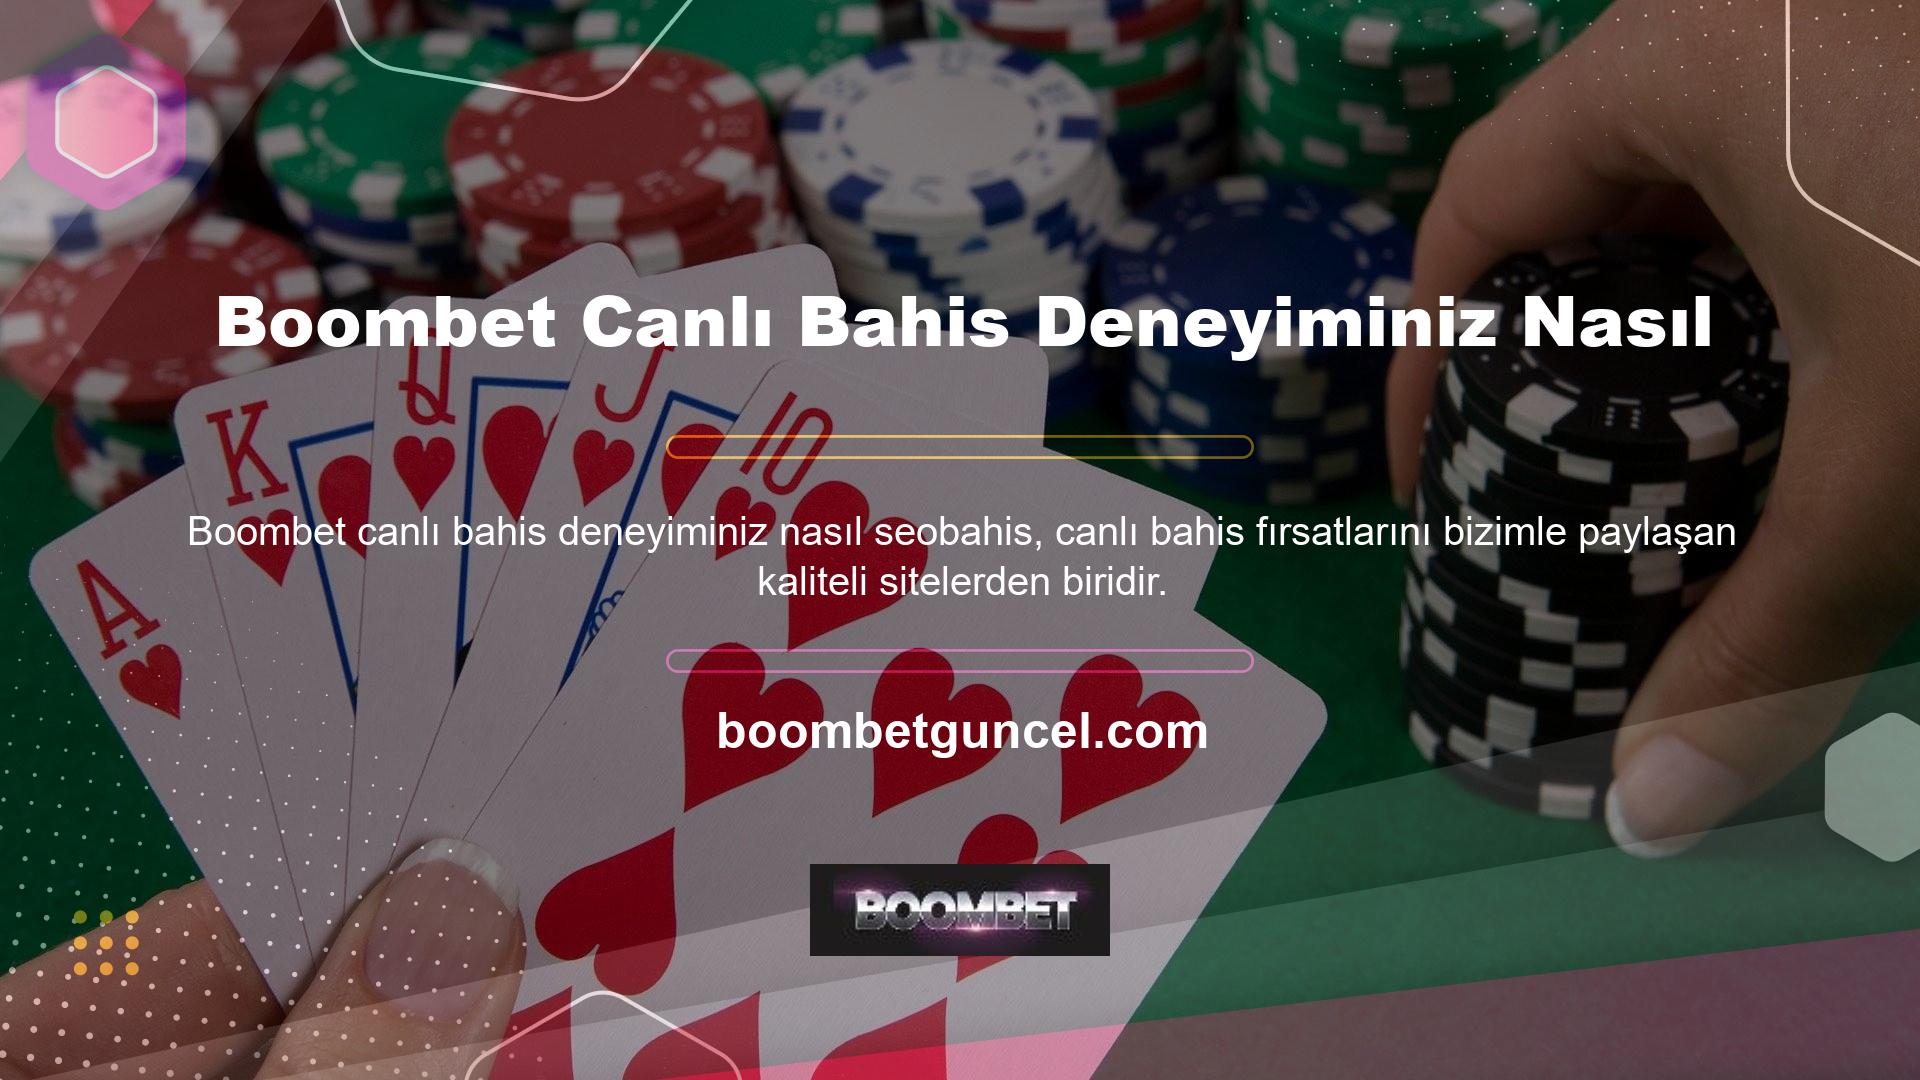 Canlı Bahis Olanakları Boombet canlı bahis deneyimi nasıldır, bu özellikle Türk oyuncular için önemlidir